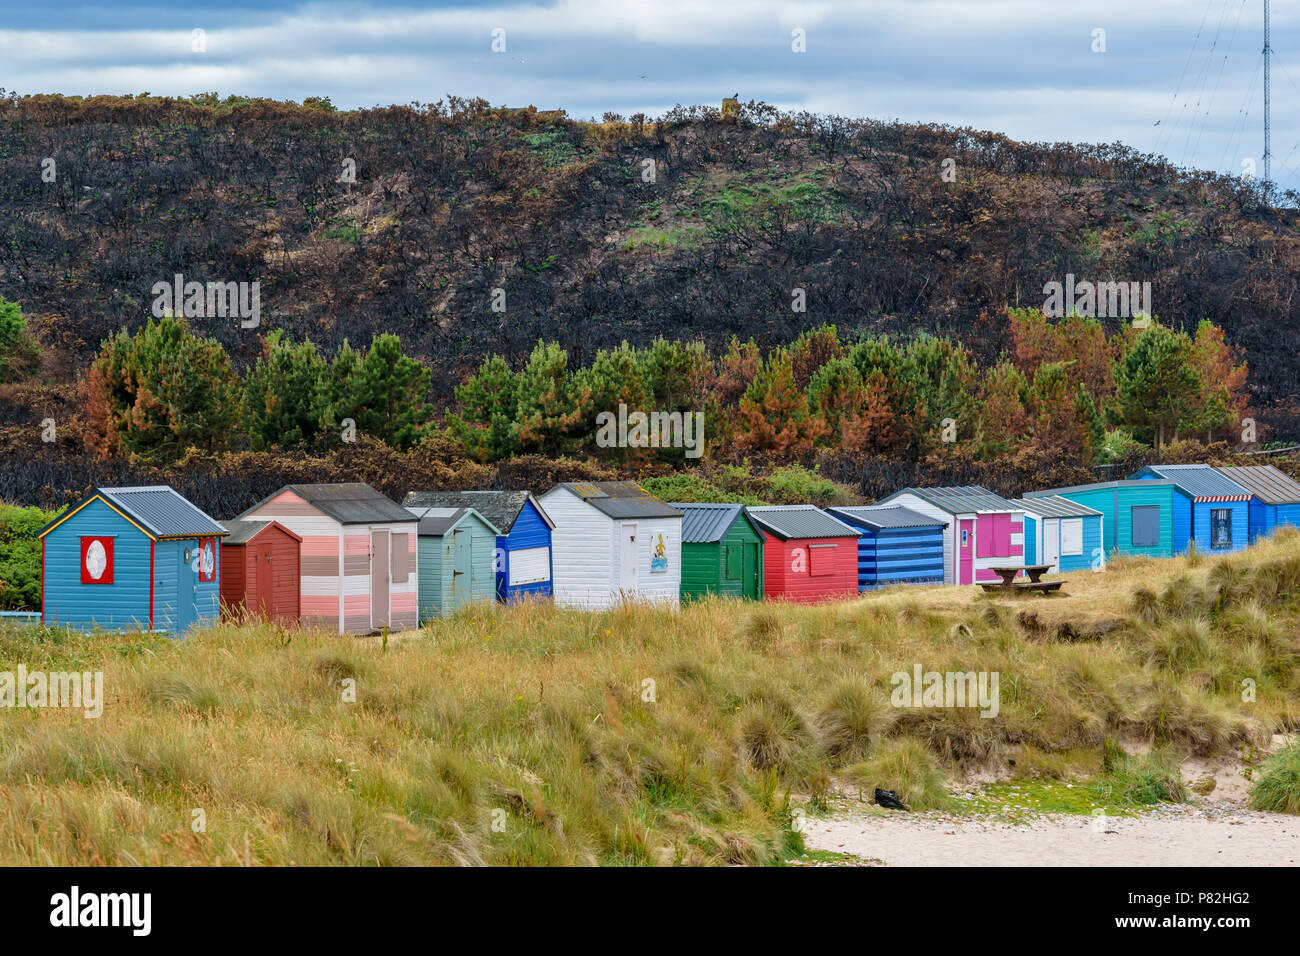 HOPEMAN Moray in Schottland Strand Hütten oder CHALETS ÜBERSEHEN DURCH EINEN UMFANGREICHEN BEREICH DER VERBRANNTEN GINSTER UND VEGETATION WEGEN WILDFIRE Stockfoto